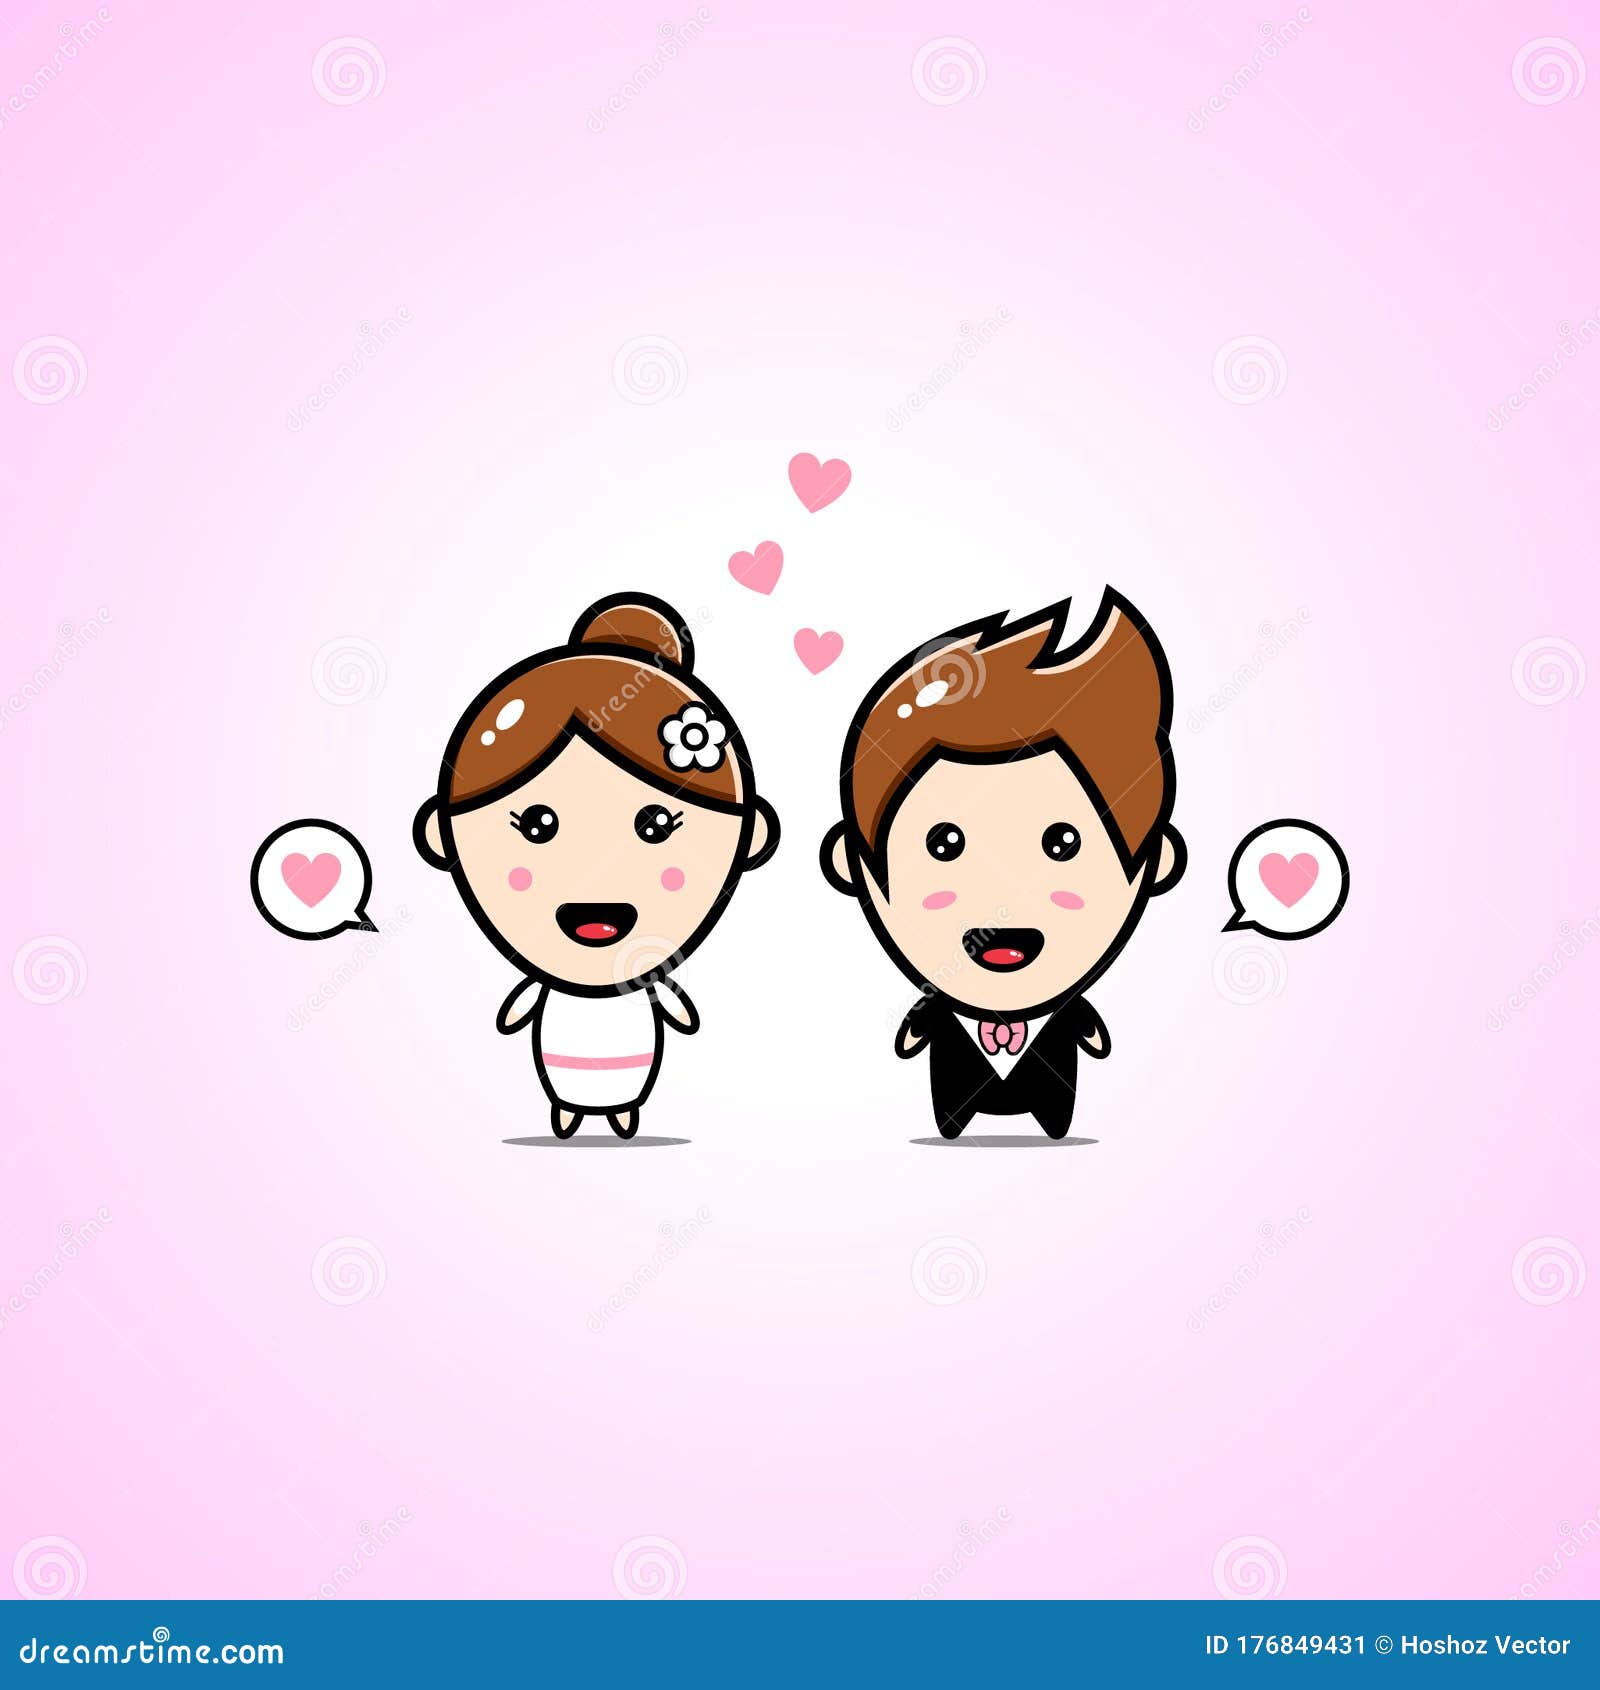 Cute Wedding Chibi Cartoon Couple Characters Stock Vector - Illustration of  cute, cartoon: 176849431